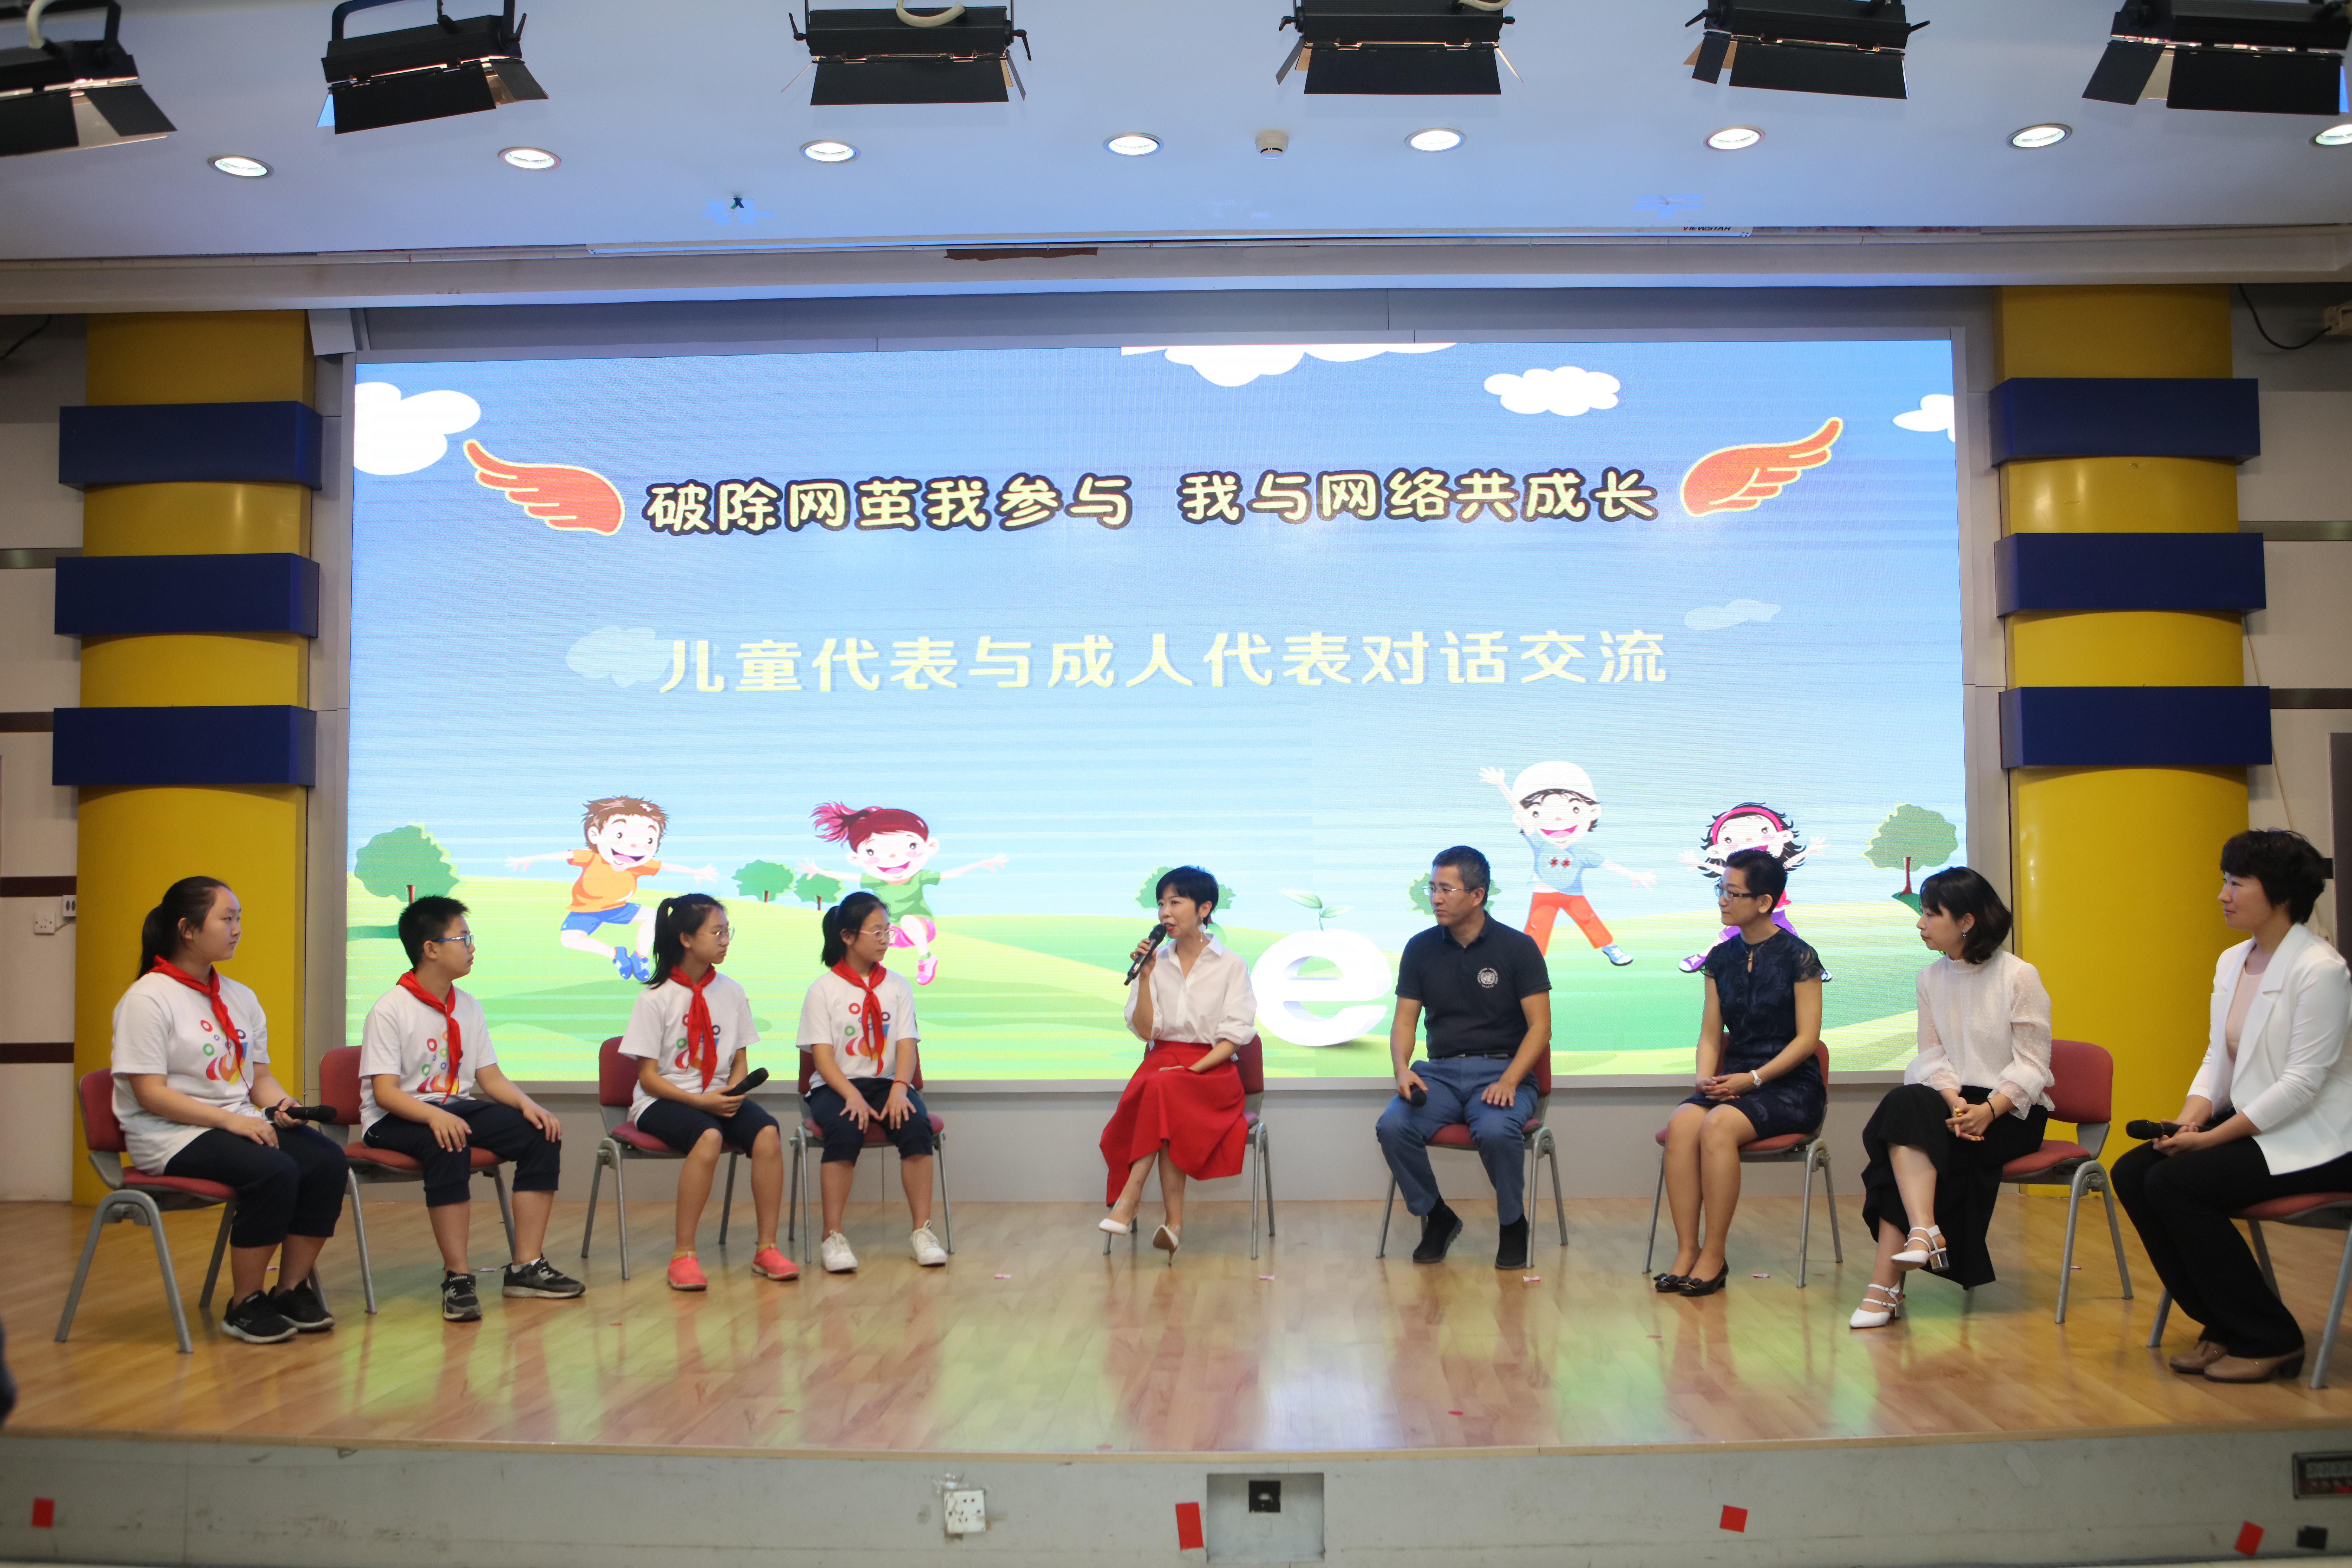 2018年6月1日，在“破除网茧我参与，我与网络共成长”六一儿童论坛上，北京市东城区东四十四条小学的学生祝松岳（左四）、王越辰（左三）、孔德浩（左二）和刘嘉祎（左一）与联合国儿童基金会驻华办事处儿童保护官员苏文颖（中）、北京青少年法律援助与研究中心主任佟丽华（右四）、中国传媒大学教育研究中心副研究员张洁（右三）、腾讯安全课高级讲师舒梦莹（右二）、家长代表王迎（右一）展开对话，就他们对网络的看法畅所欲言。